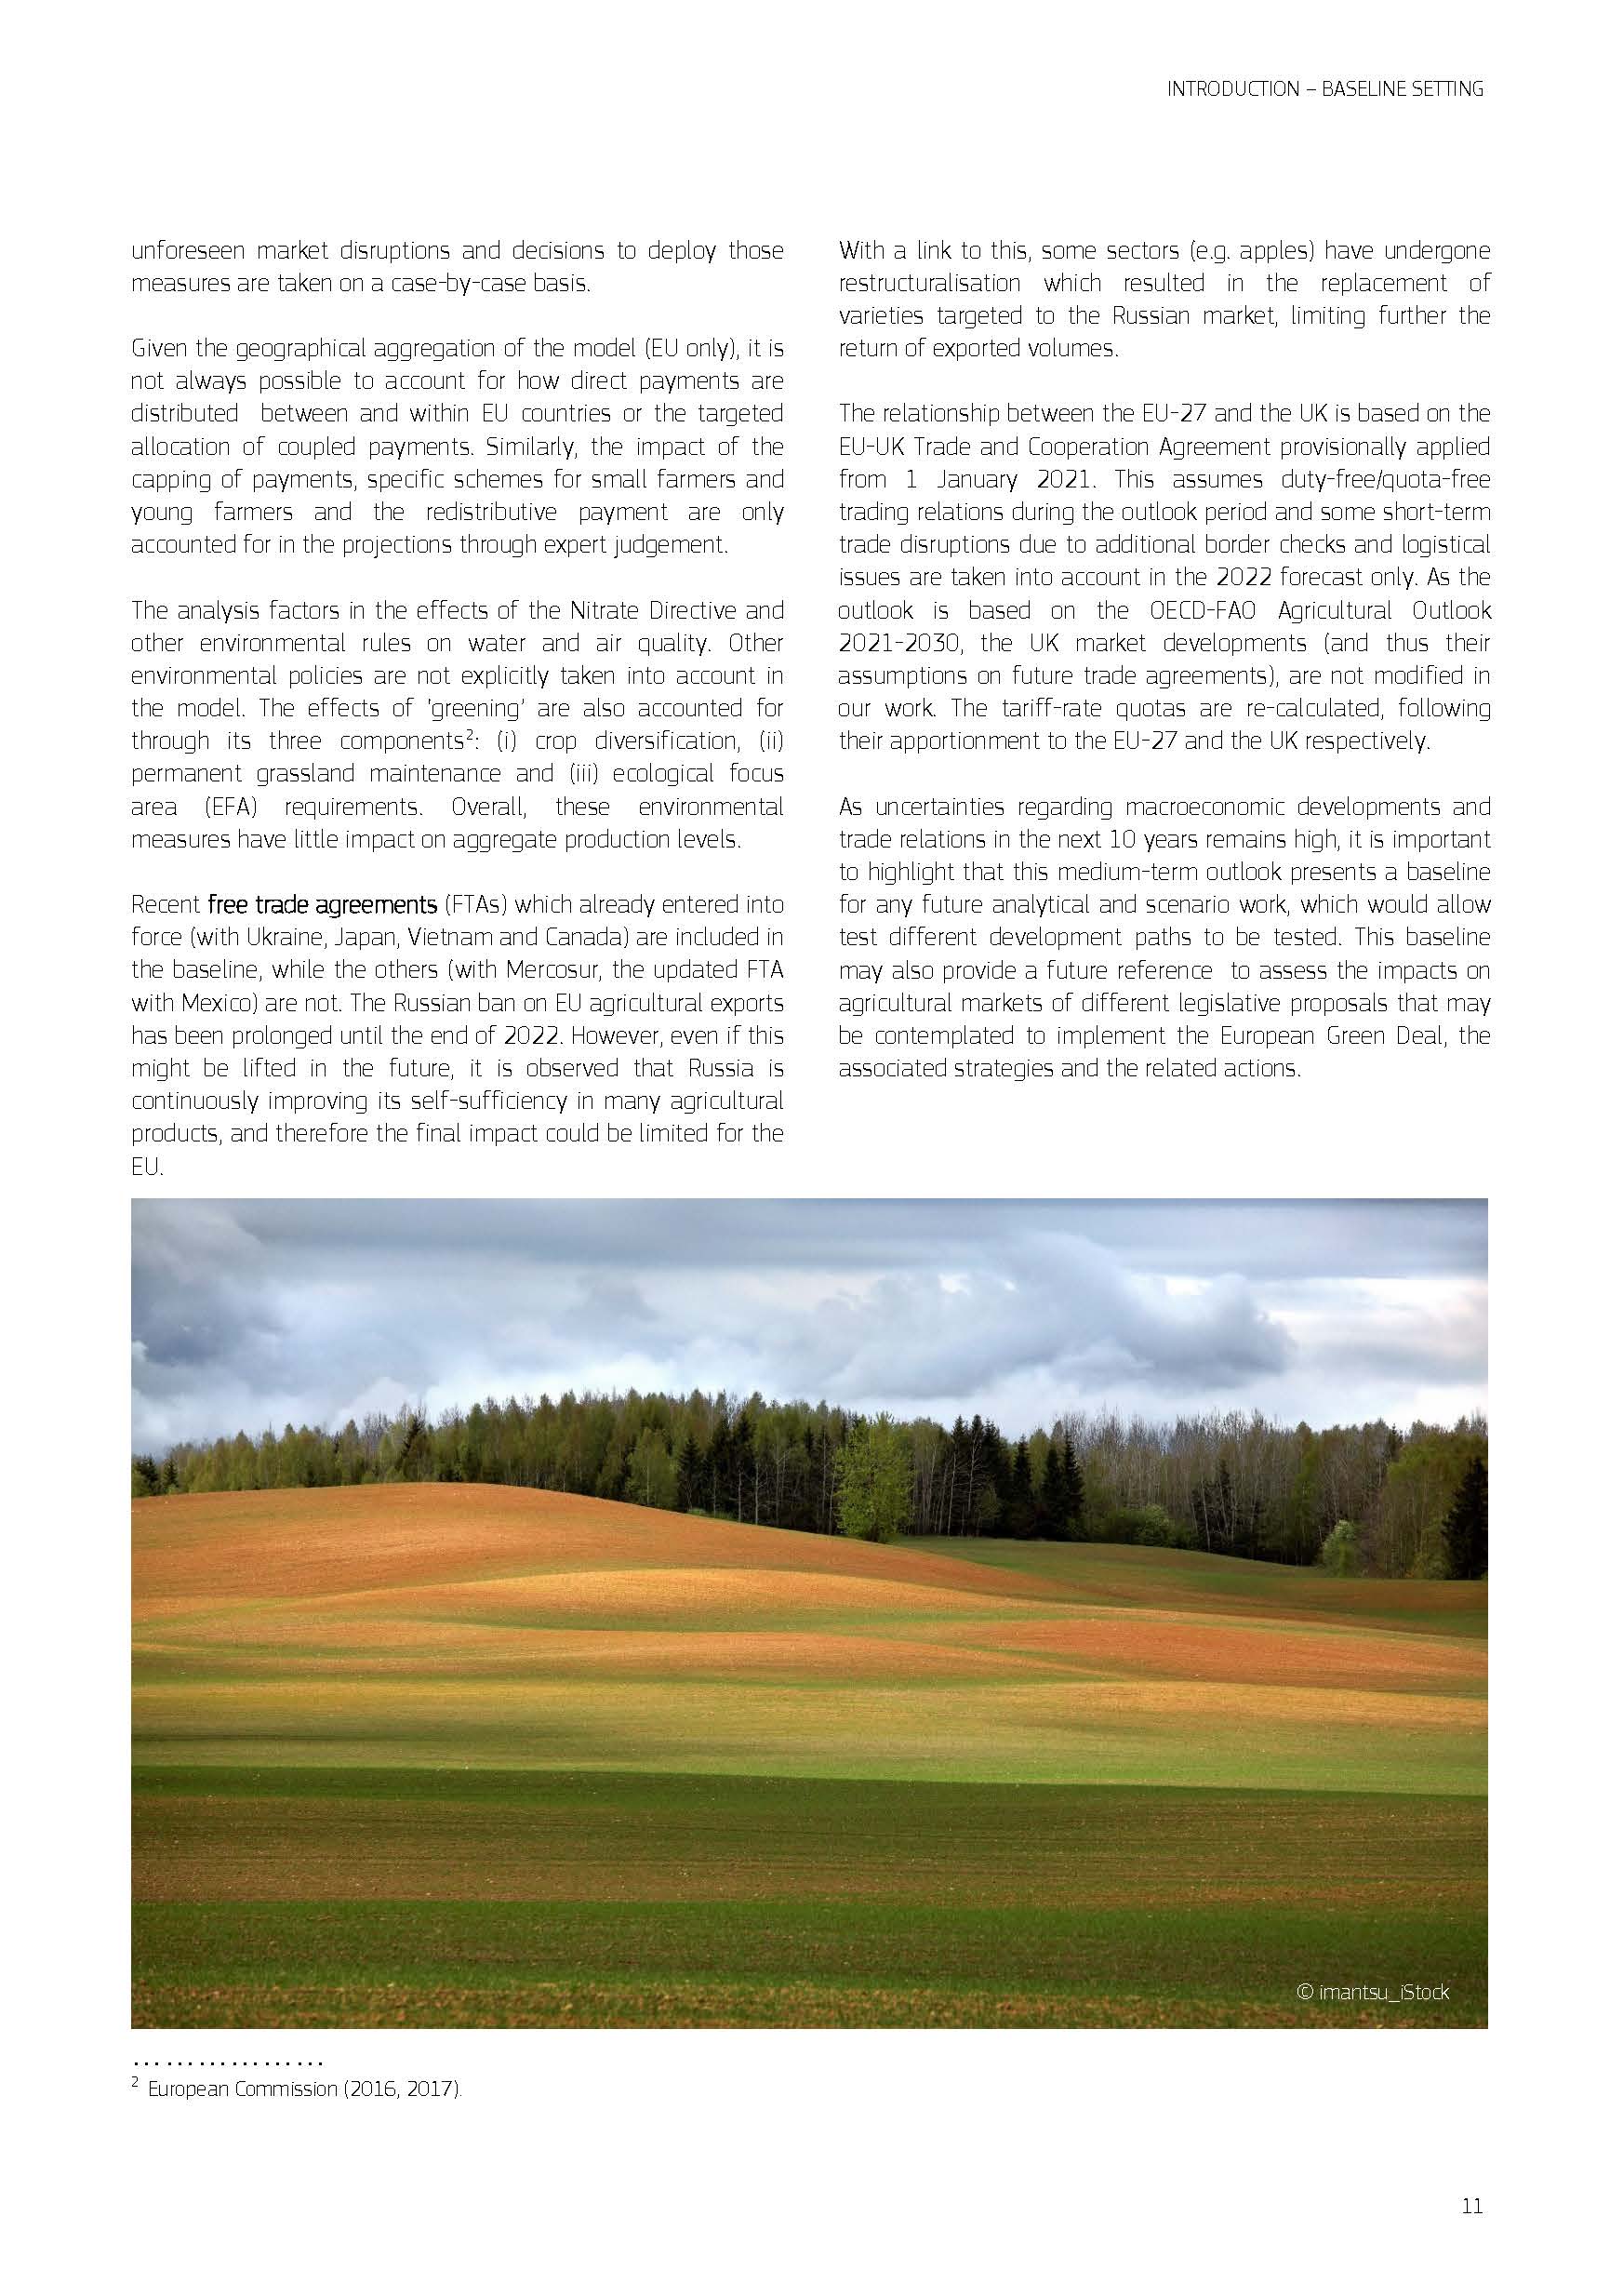 欧盟农业展望报告